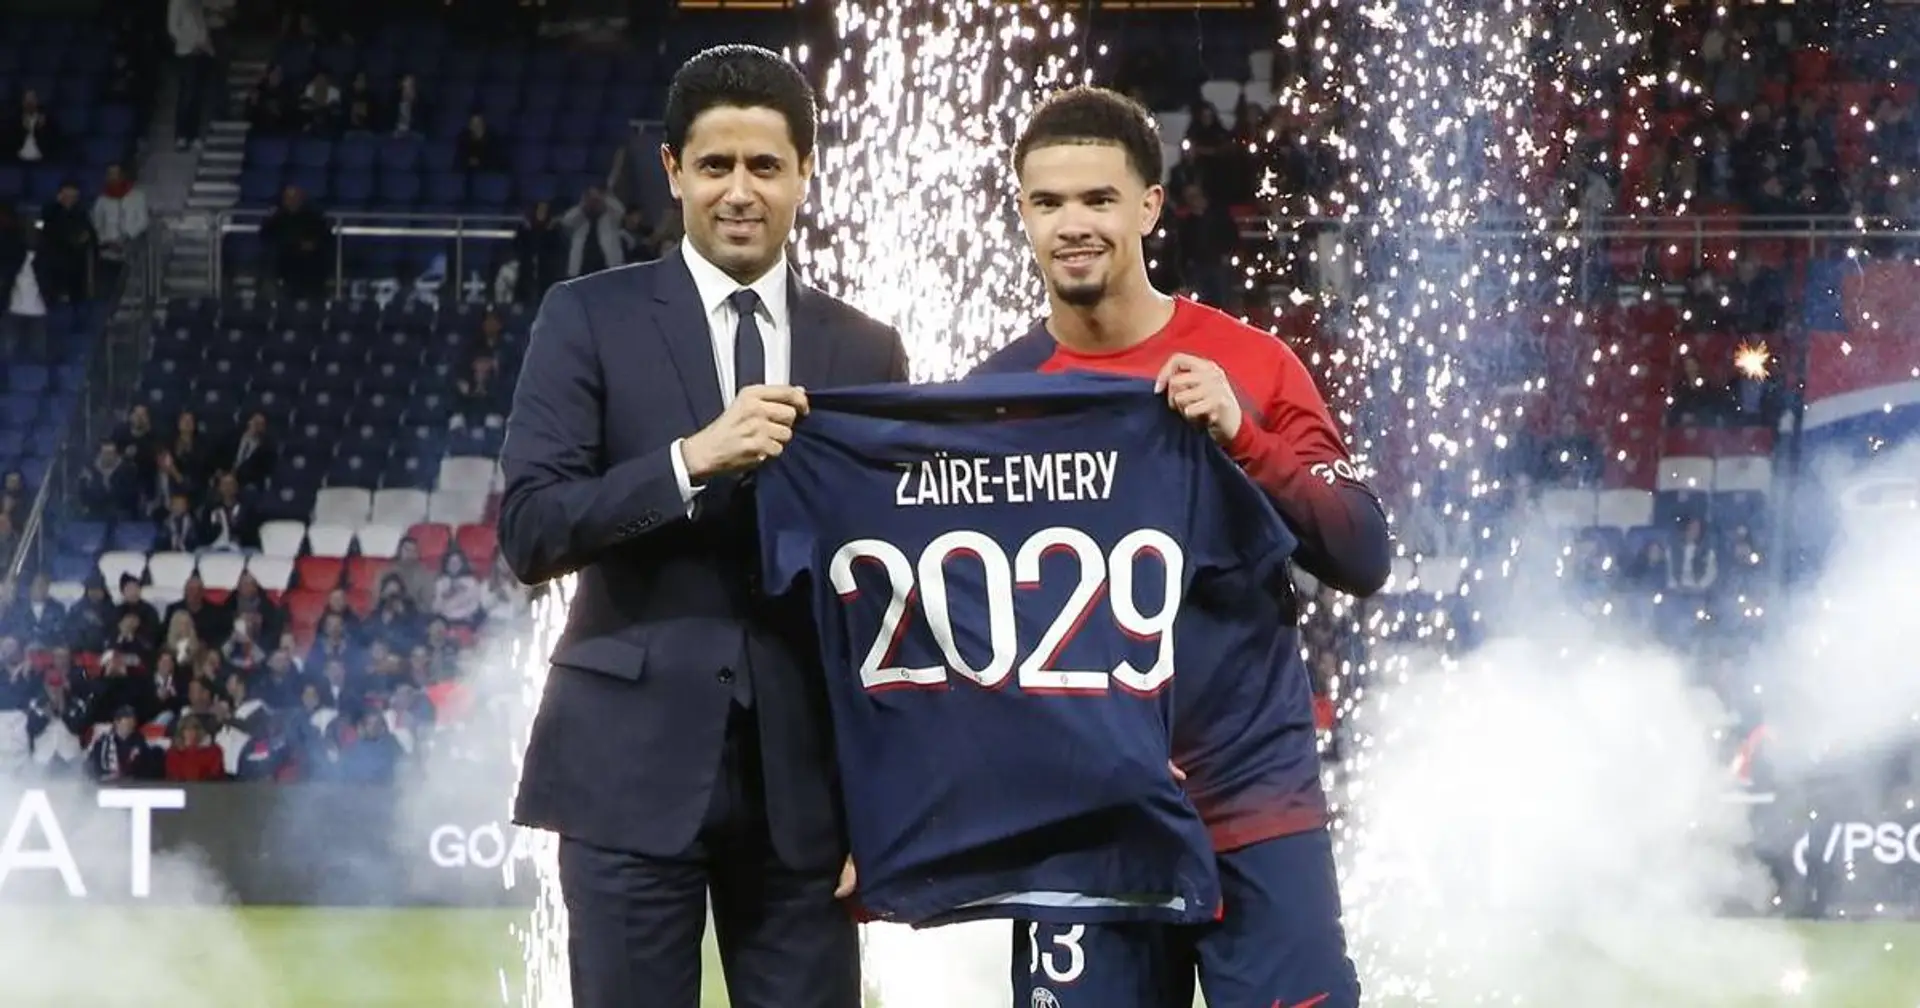 "Reconnaissant pour tout ce que le club a fait pour moi" : Zaïre-Emery présenté devant les fans avant le match vs Le Havre (vidéo)